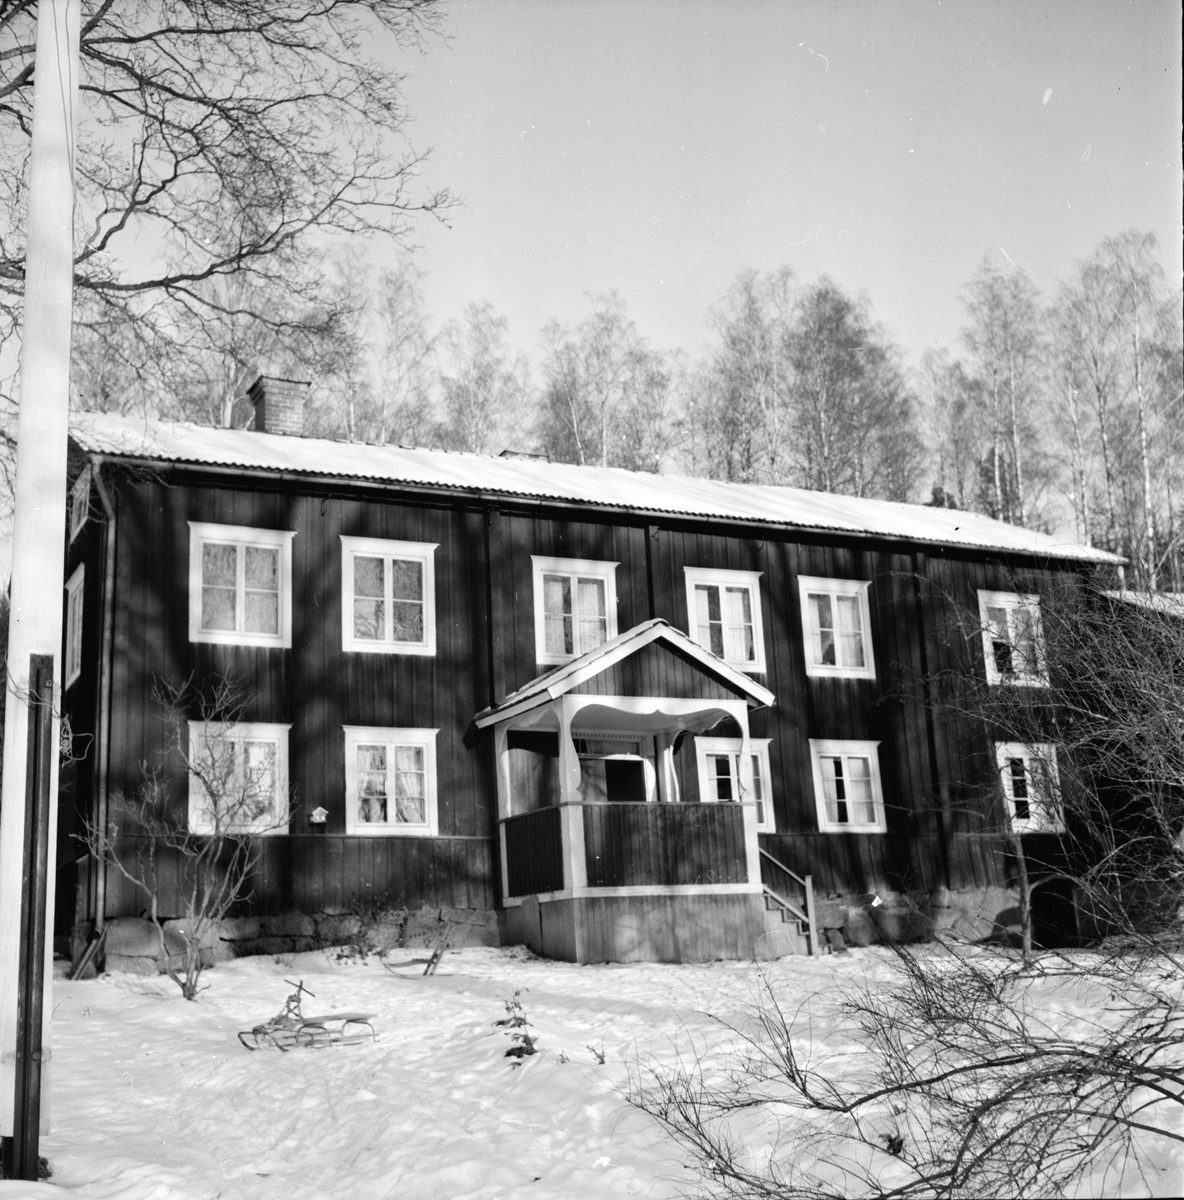 Växbo,
LarsNils,
16 December 1963